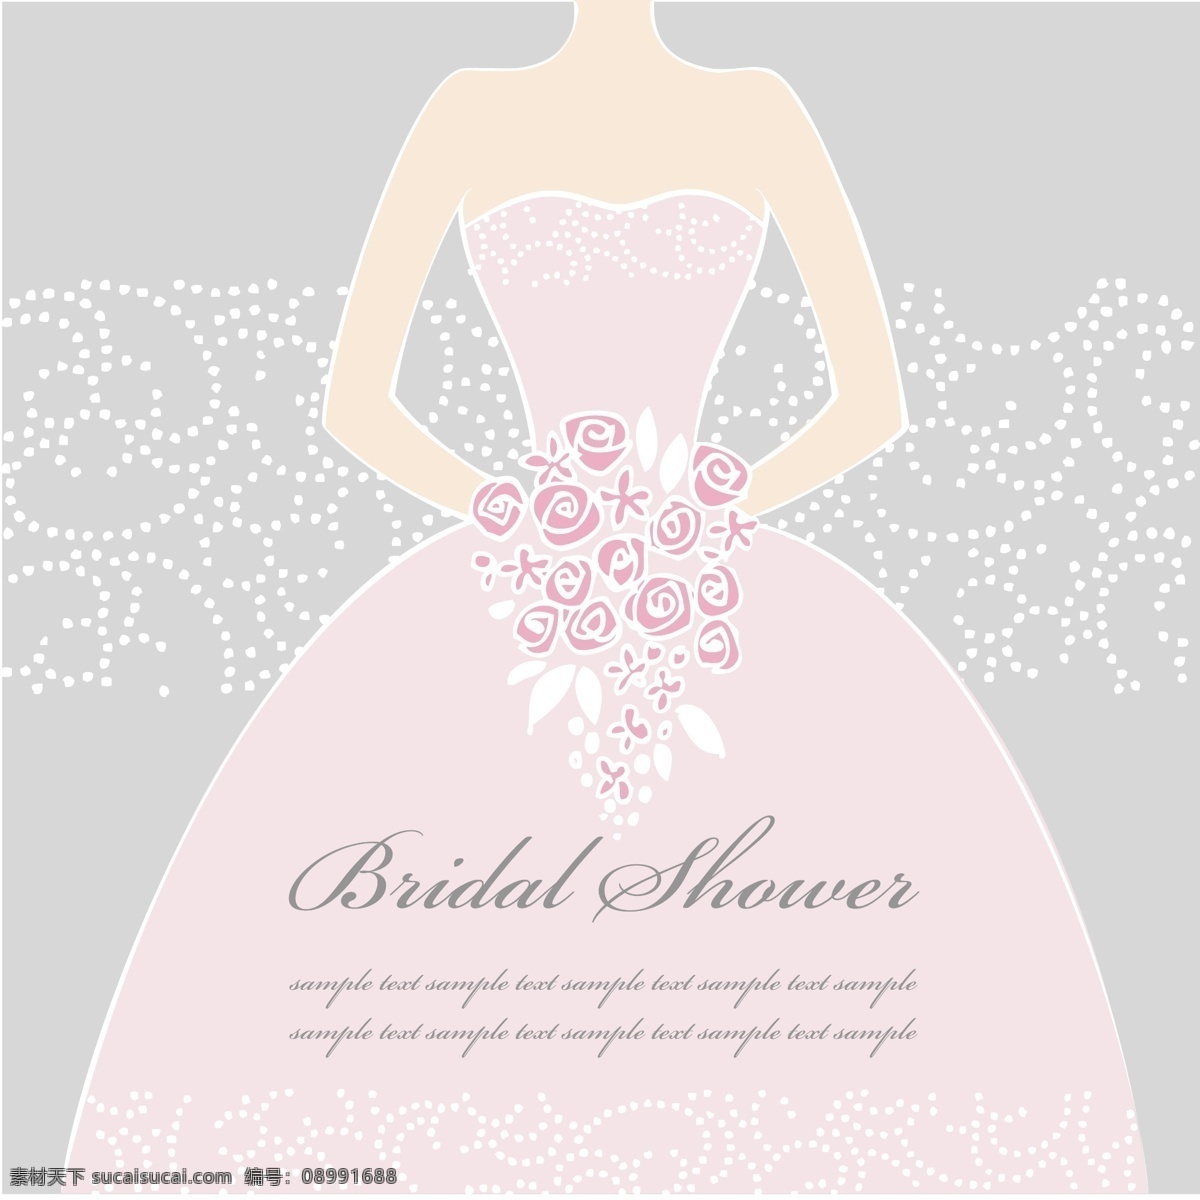 粉色 新娘 婚纱 矢量 卡片 结婚 浪漫 婚礼 矢量素材 平面设计素材